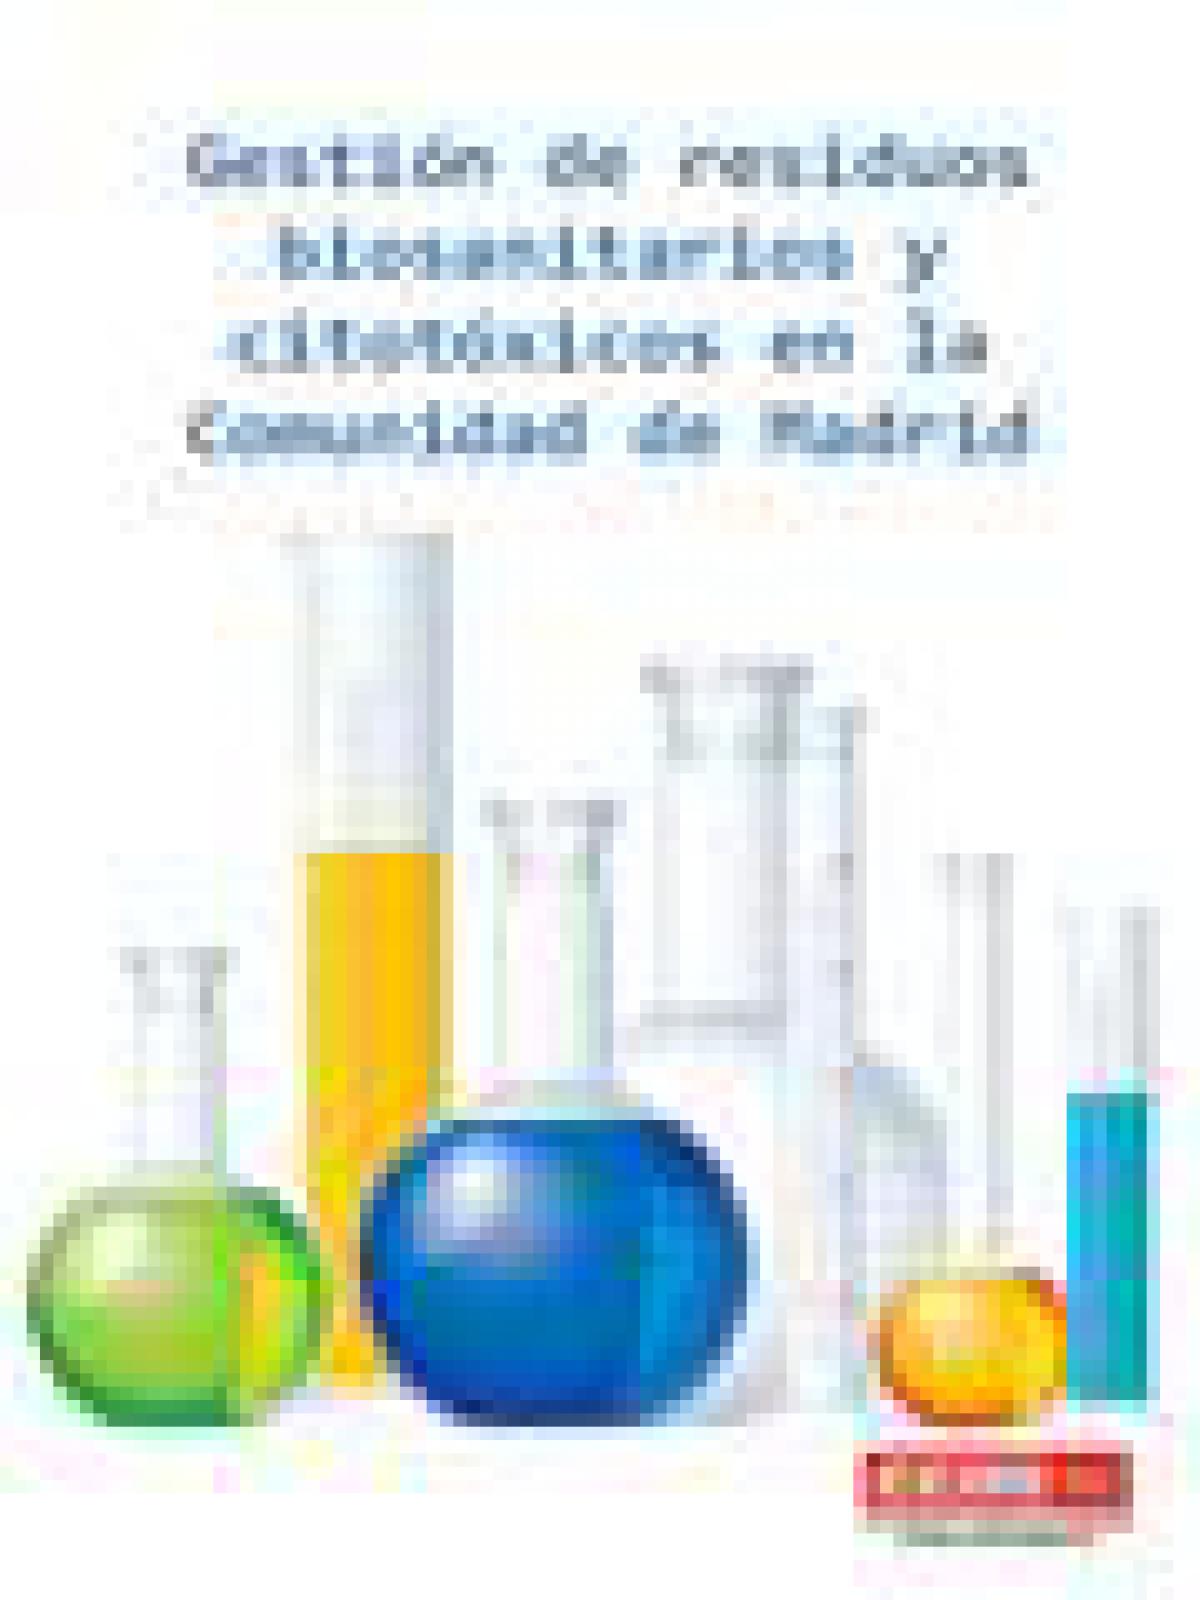 Gestin de residuos biosanitarios y citotxicos en la Comunidad de Madrid 